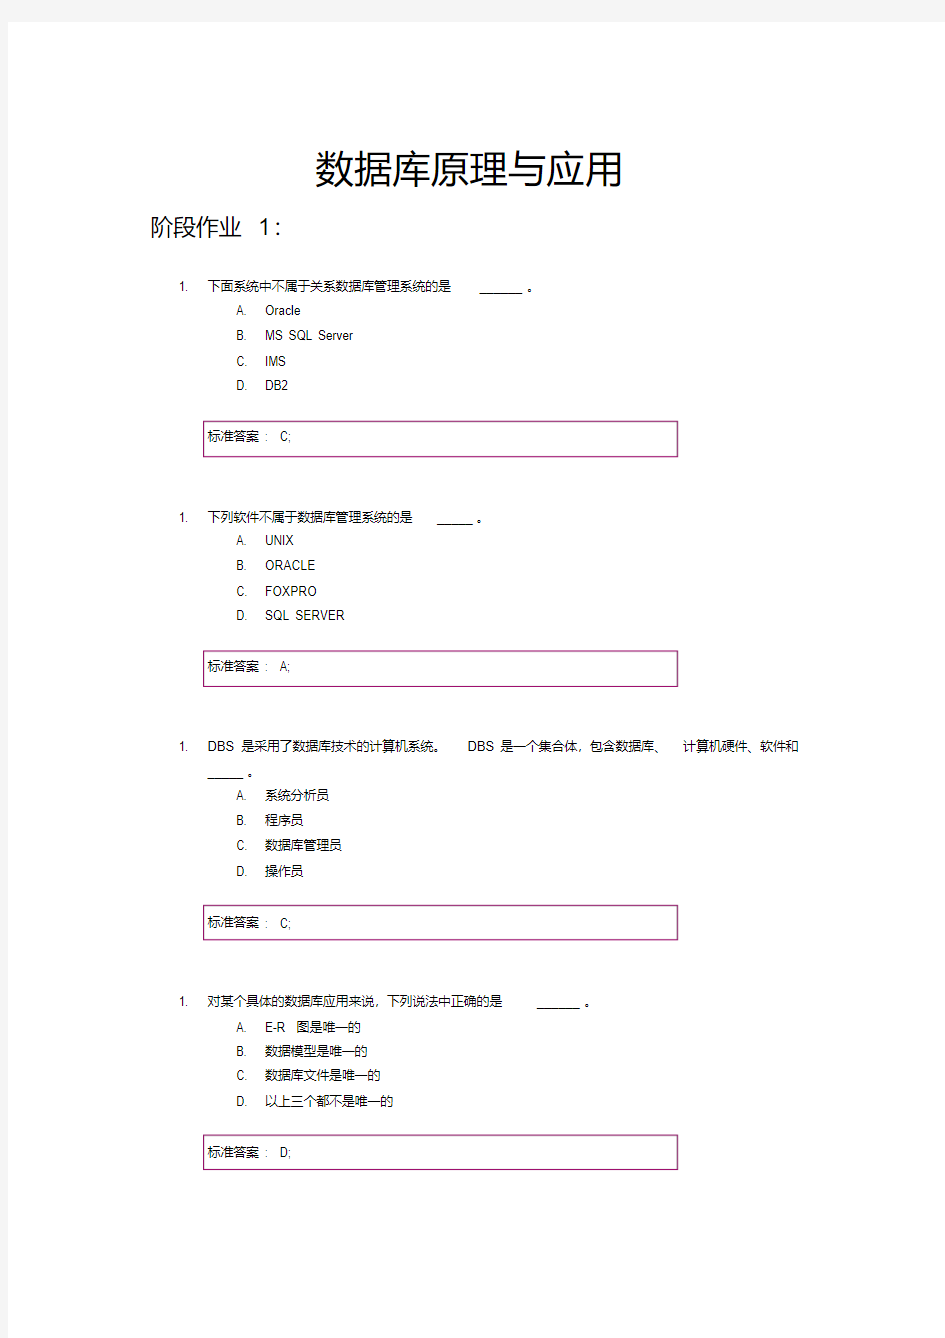 北京邮电大学-数据库原理与应用-阶段作业